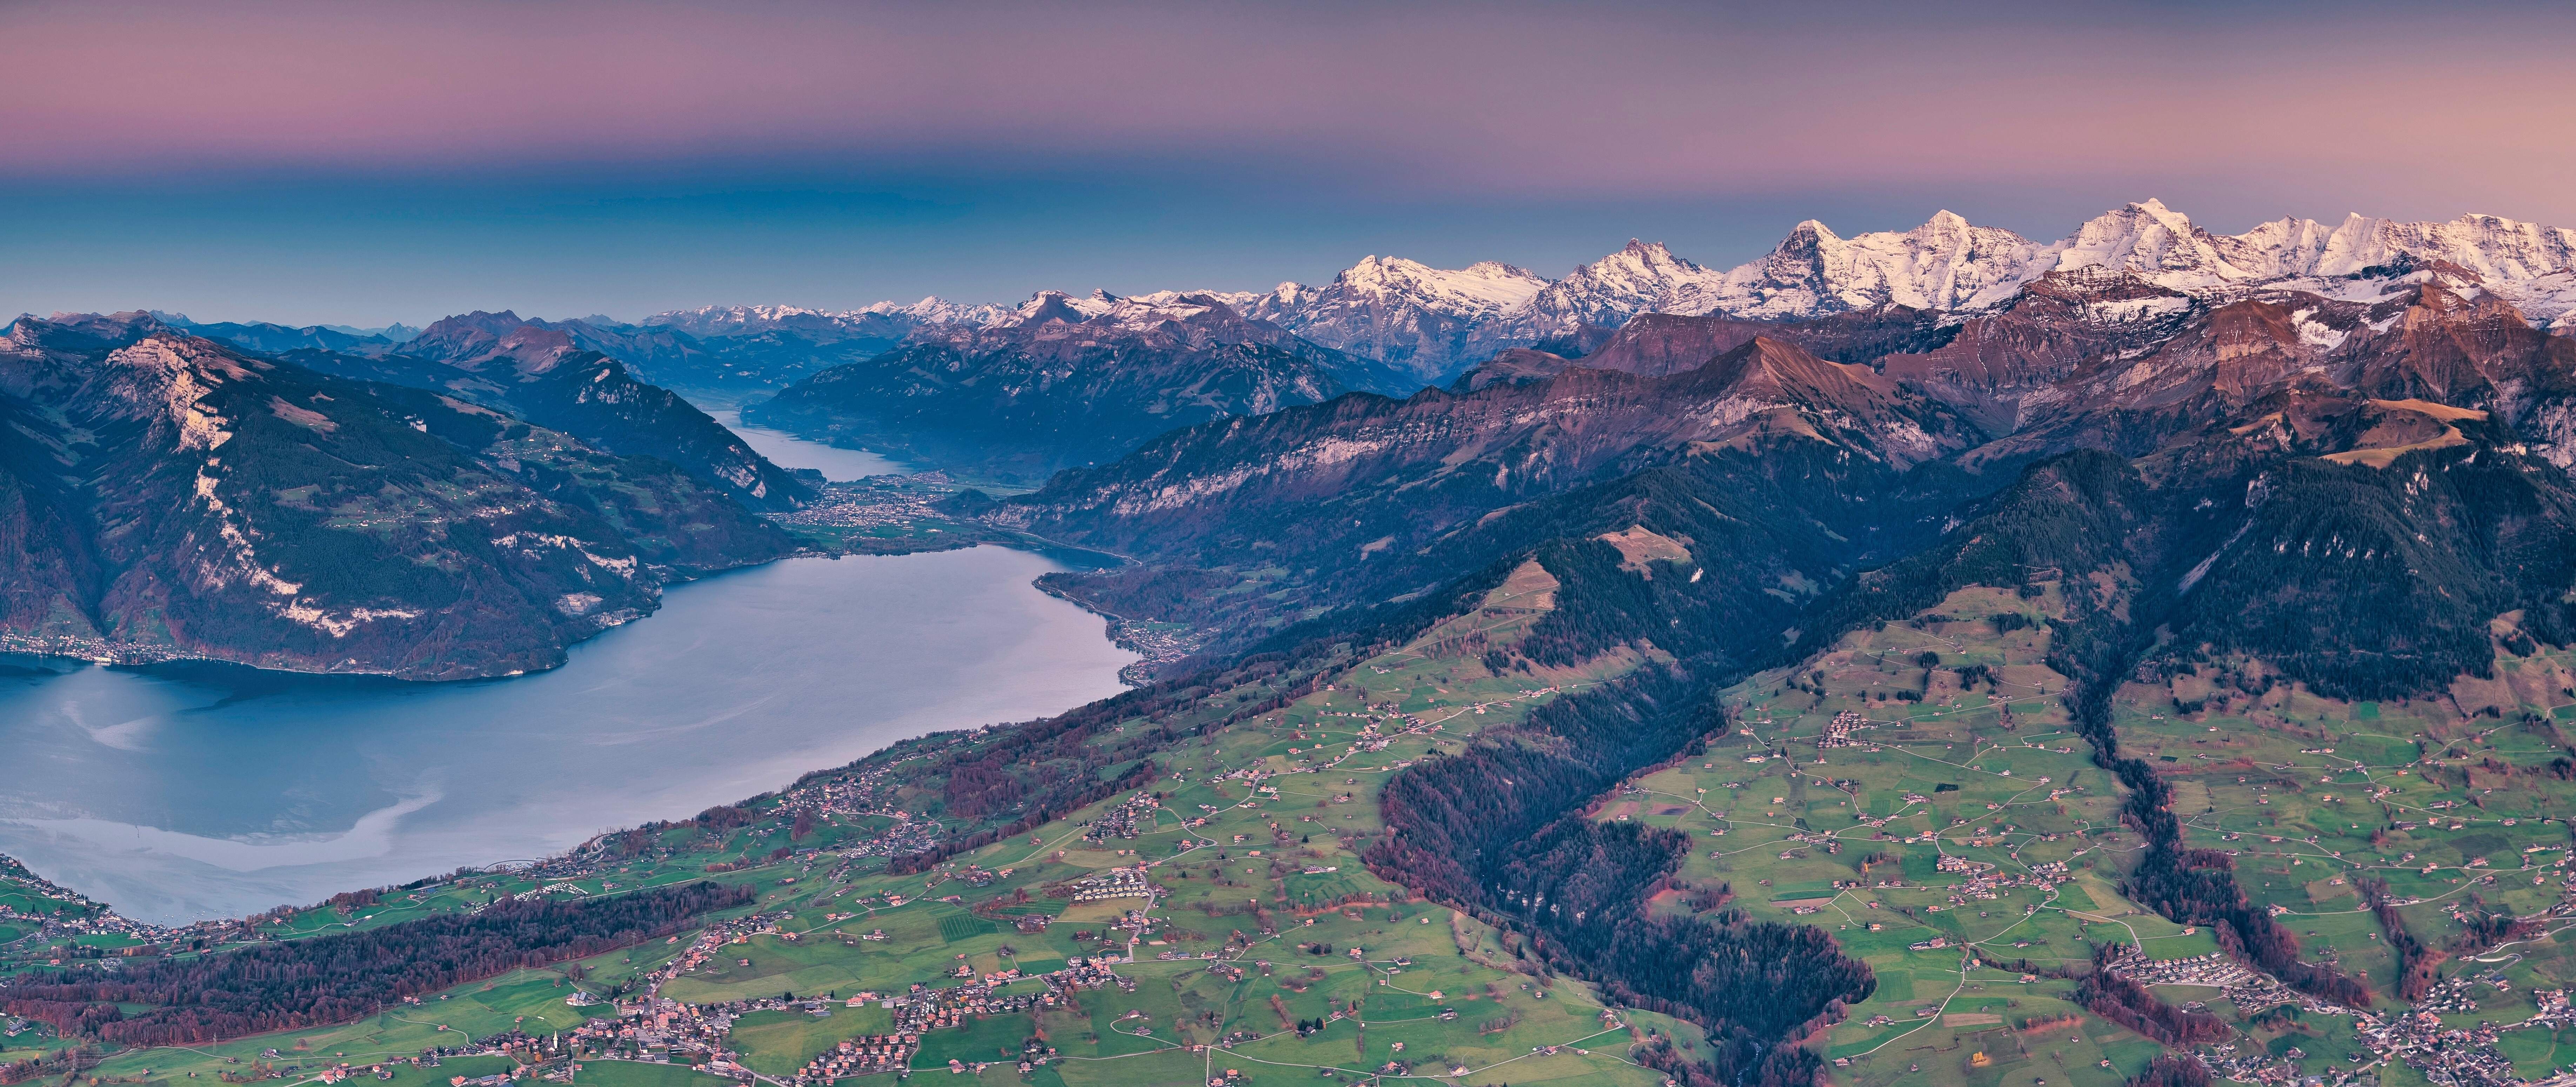 Jungfrau Panorama